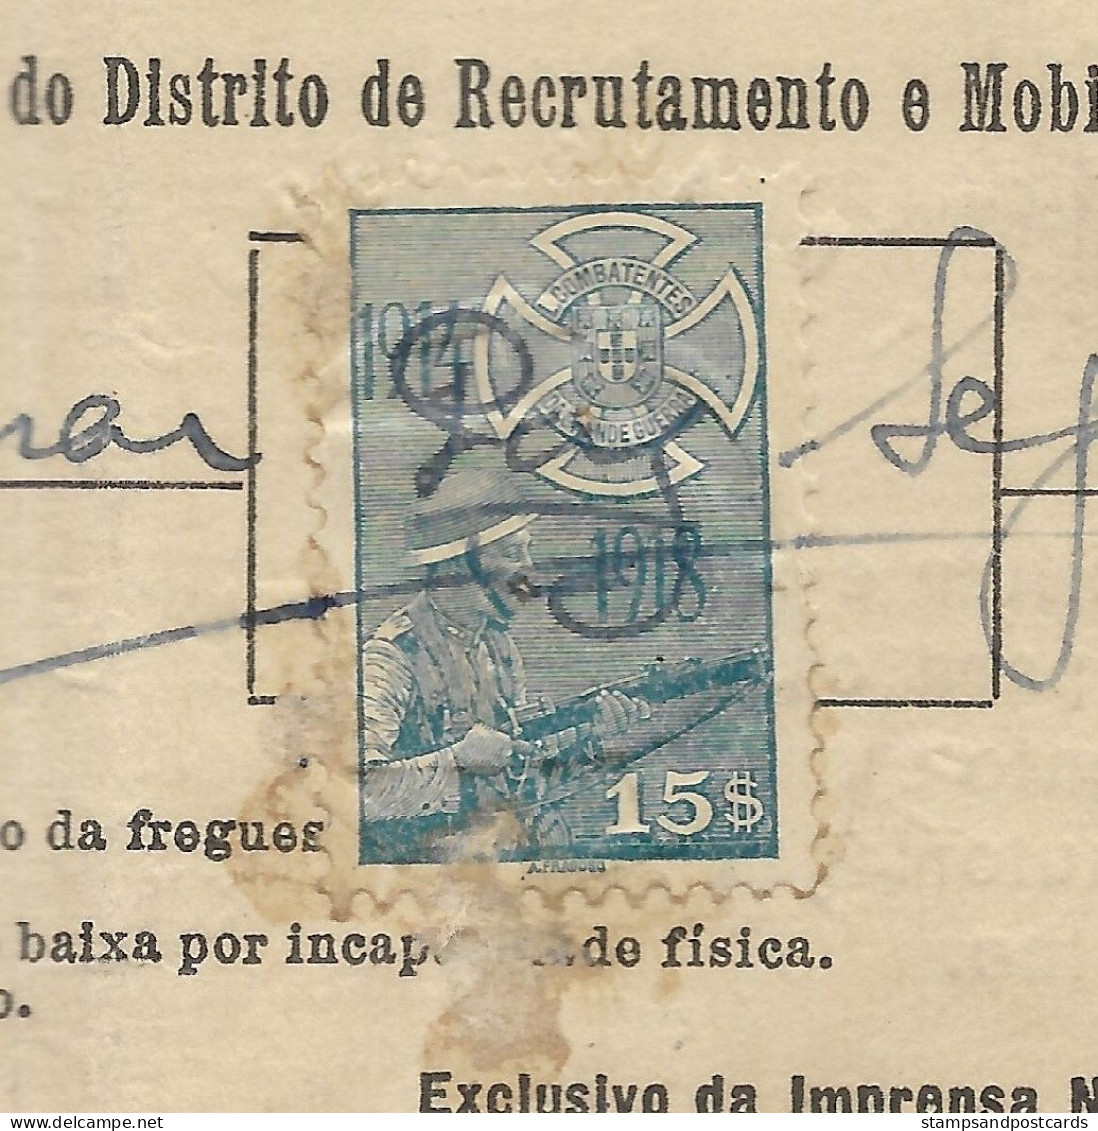 Portugal Timbre Fiscal Liga Dos Combatentes 15$ 1942 Revenue Stamp Militar Exemption - Storia Postale